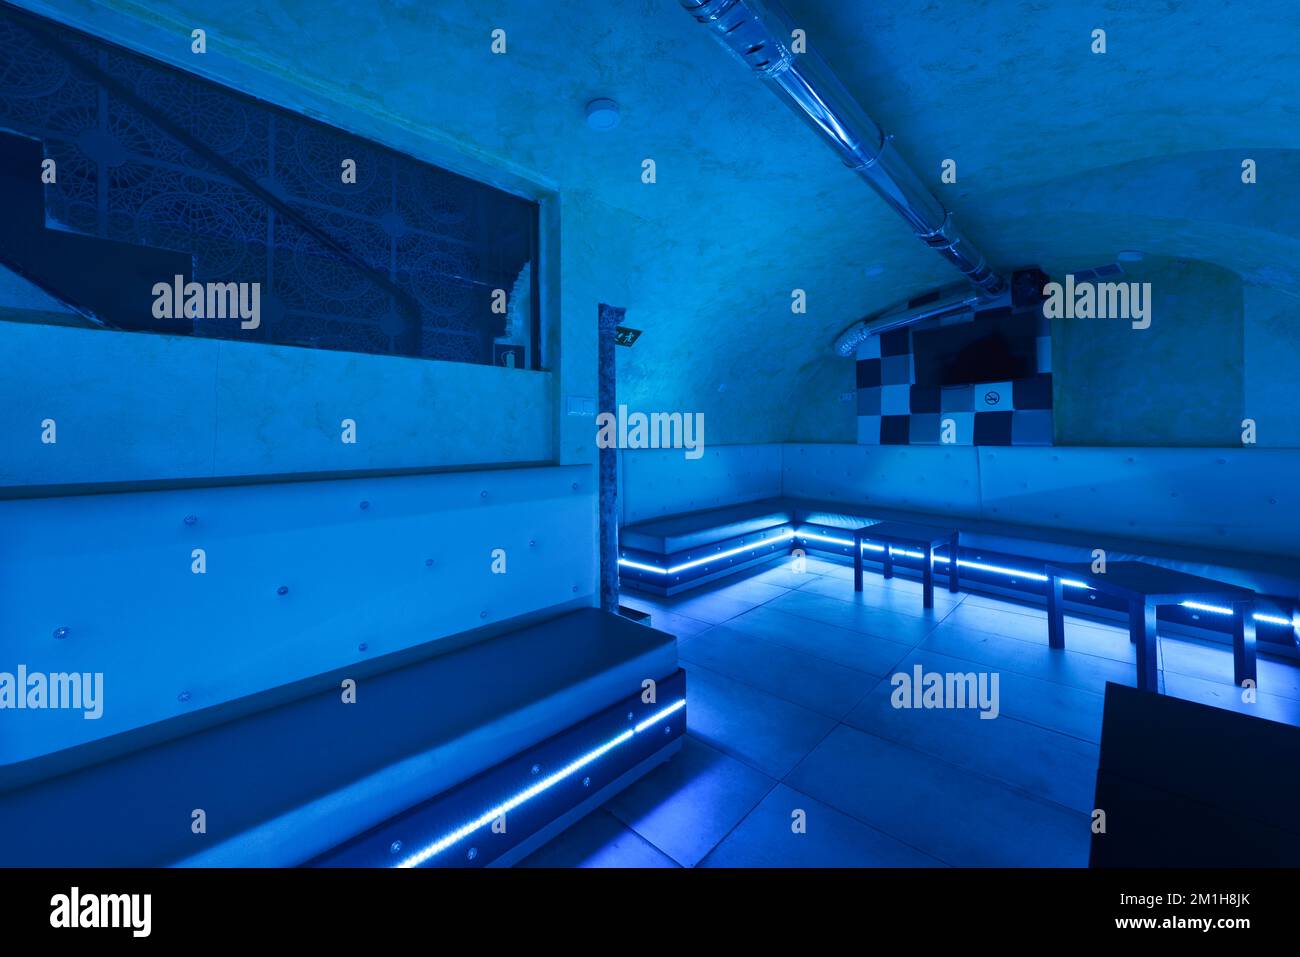 Salle de divertissement dans un lieu souterrain dans un lieu de vie nocturne avec éclairage au néon rvb et sièges blancs continus Banque D'Images